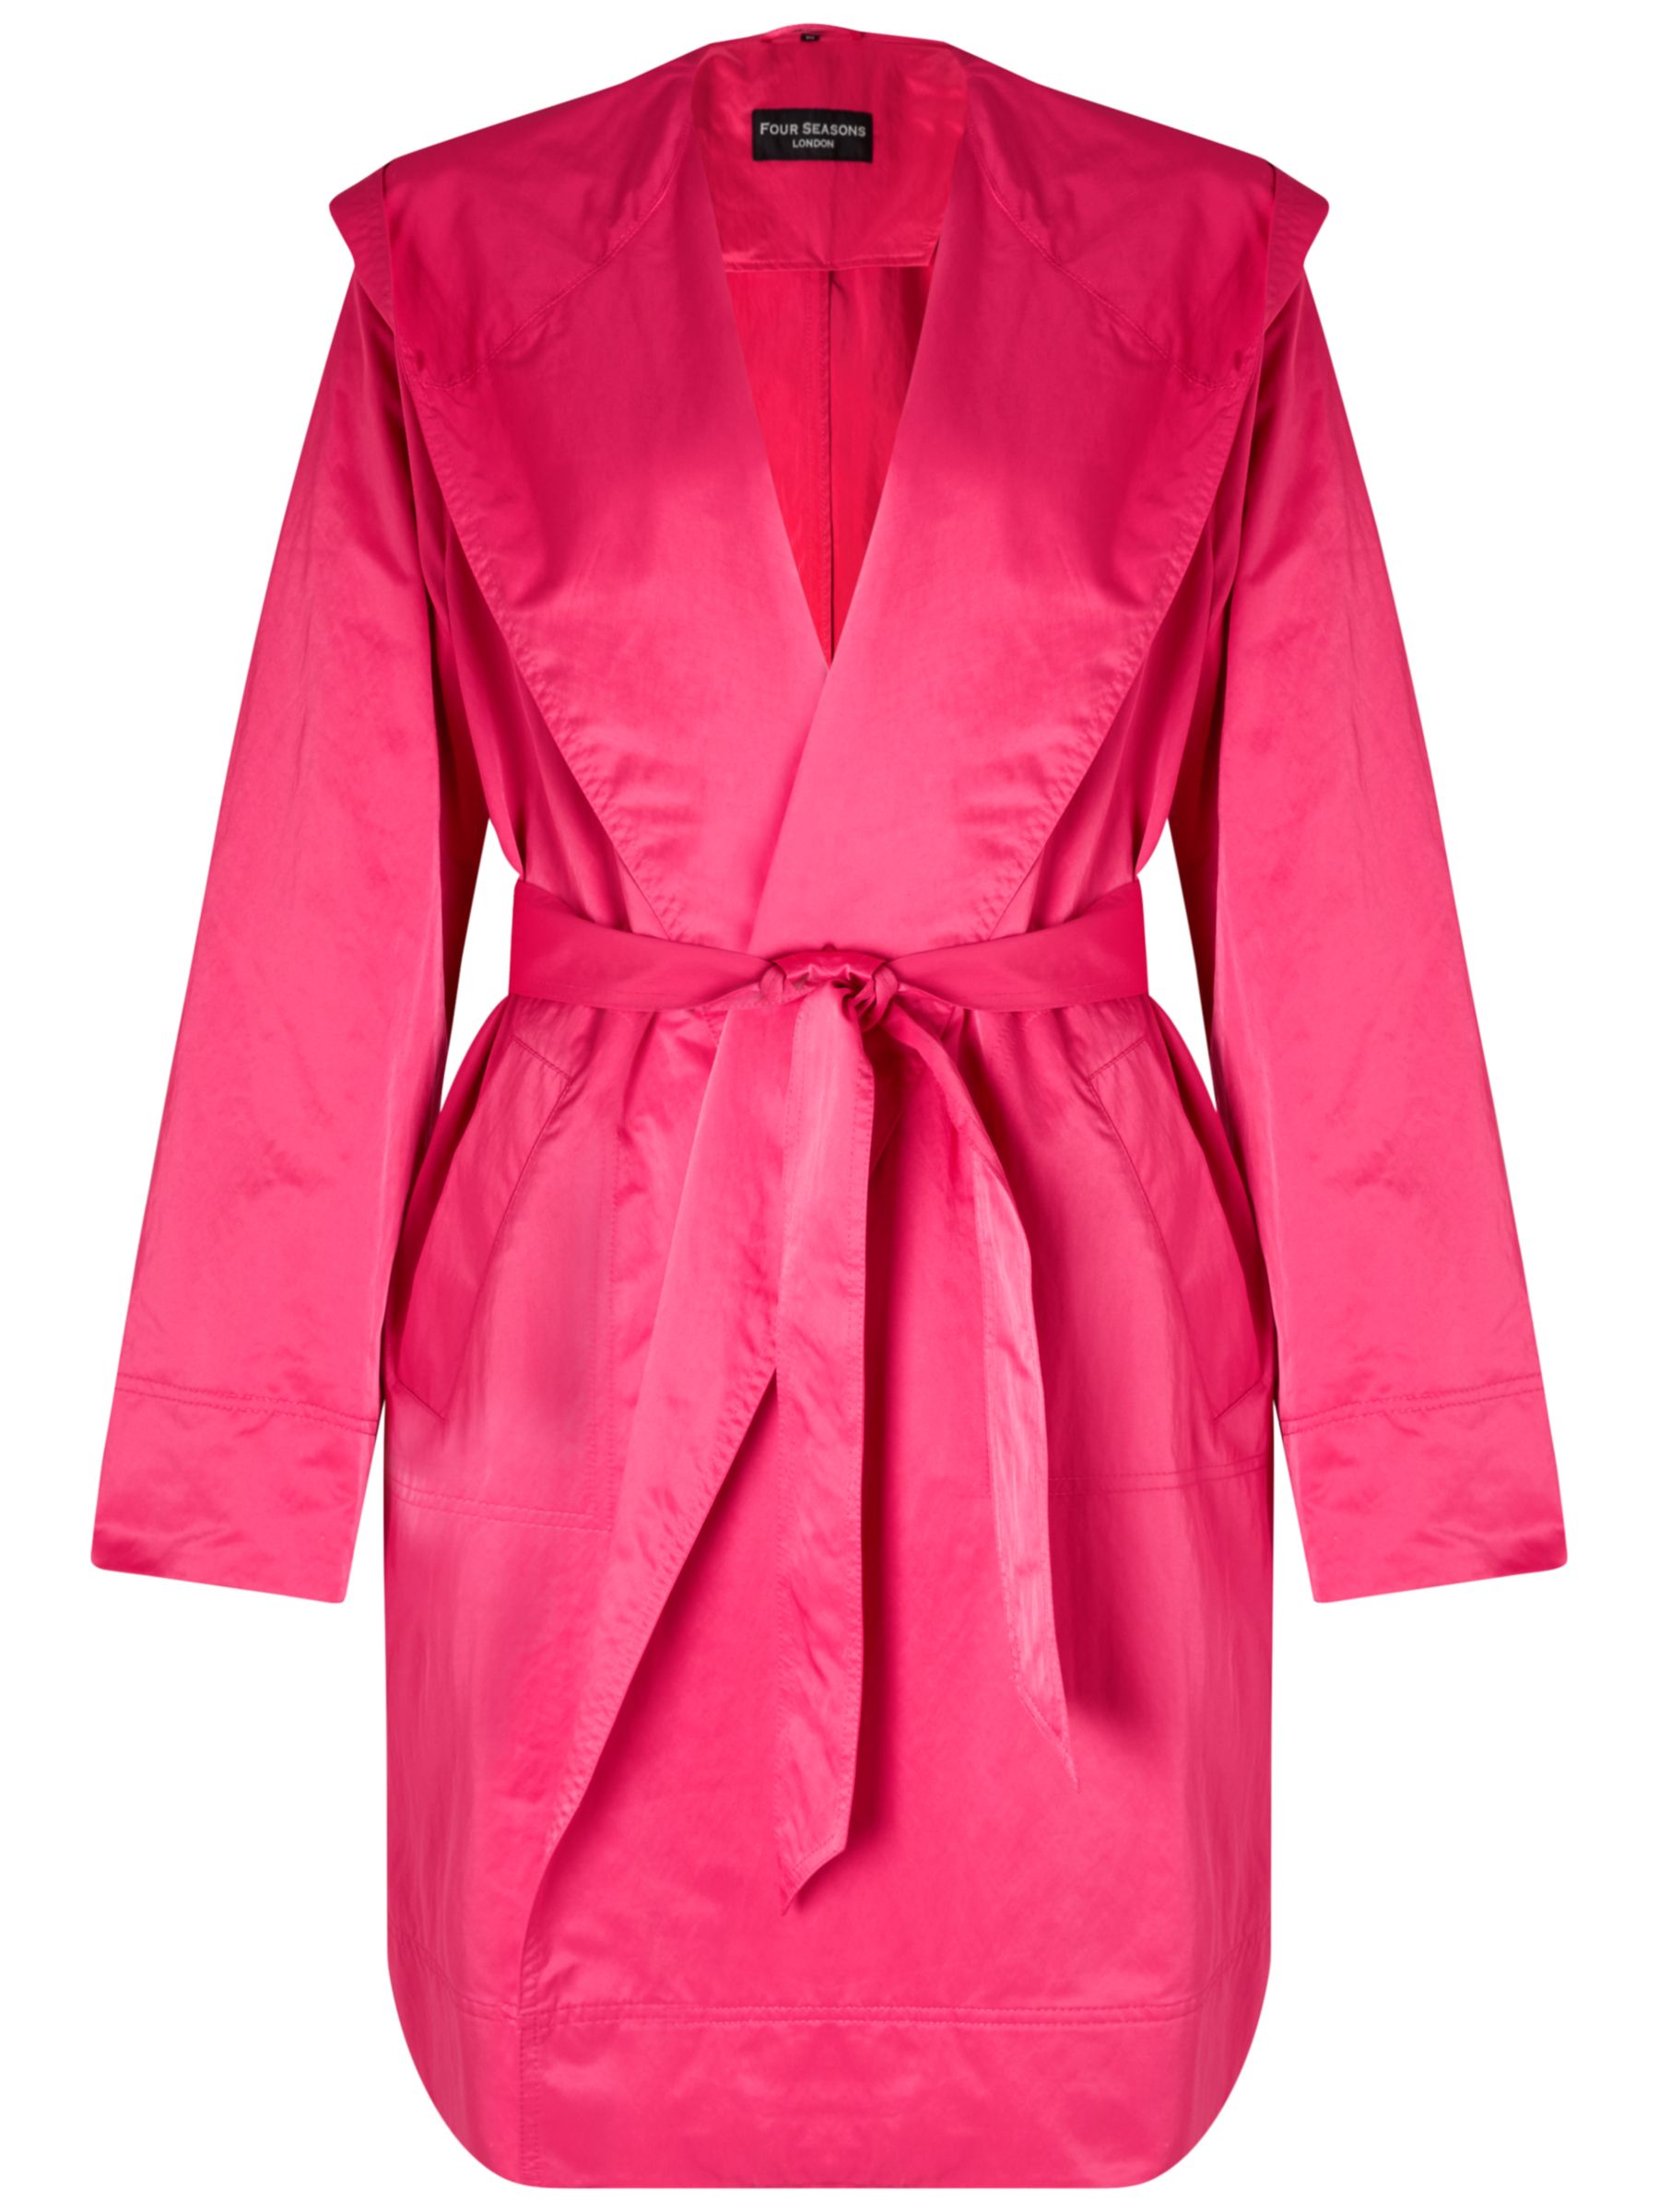 Fuschia Pink Coat - JacketIn